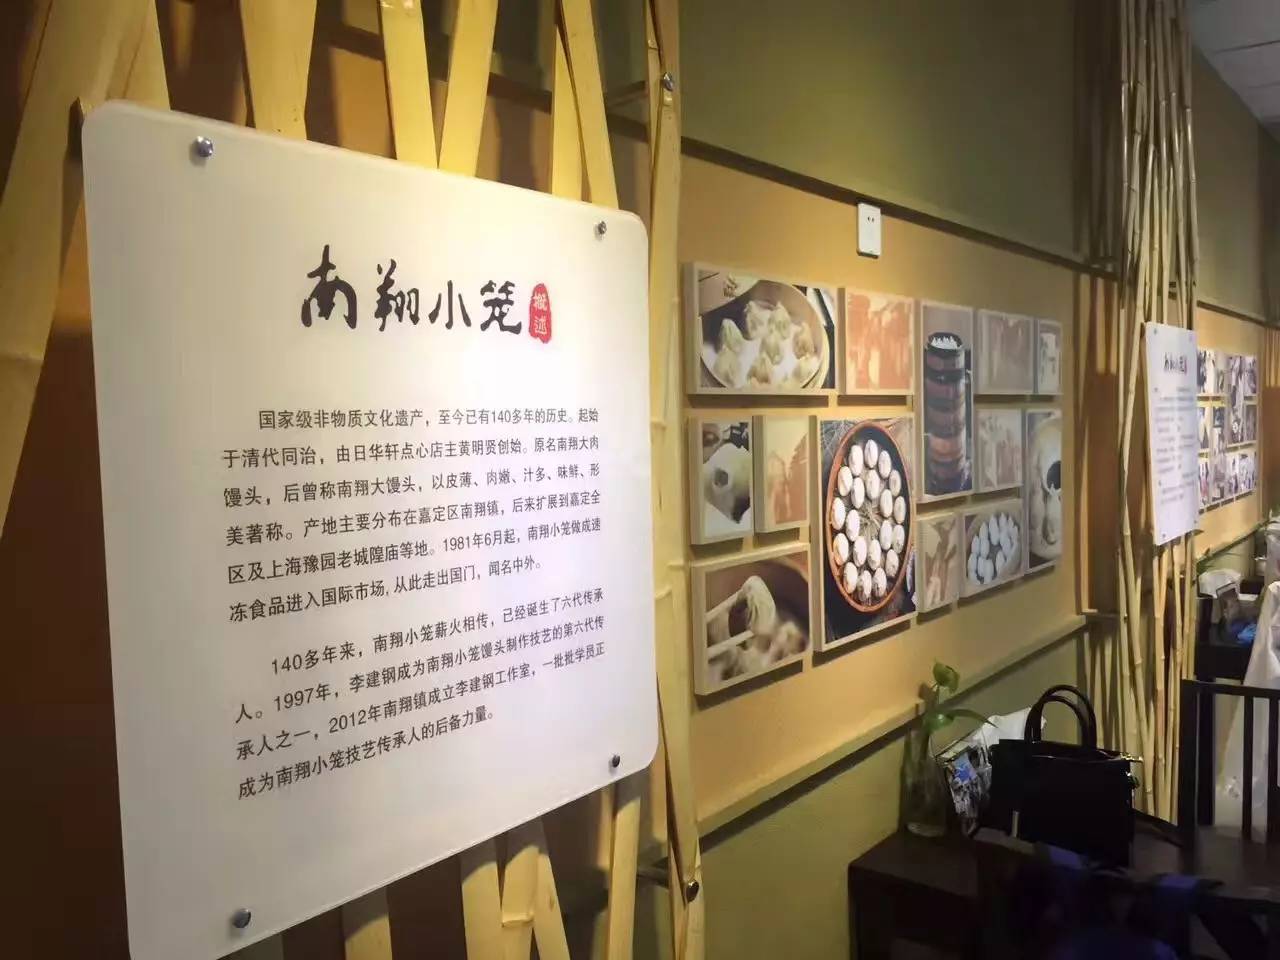 南翔小笼馒头制作工艺是我国第四批国家级非物质文化遗产名录项目